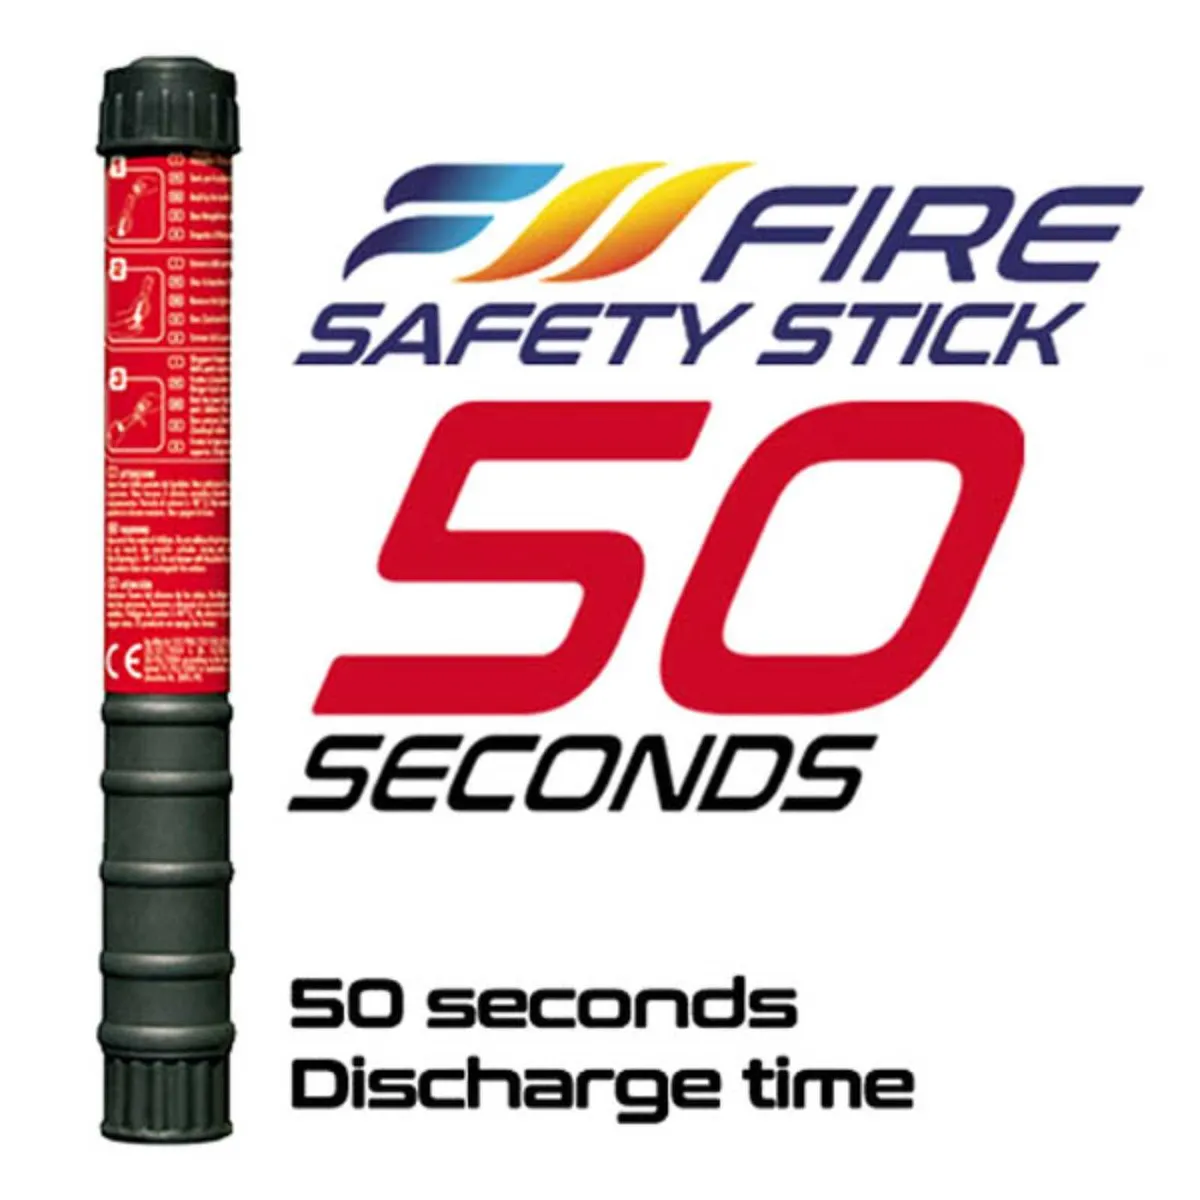 Fire Safety Sticks - Image 1